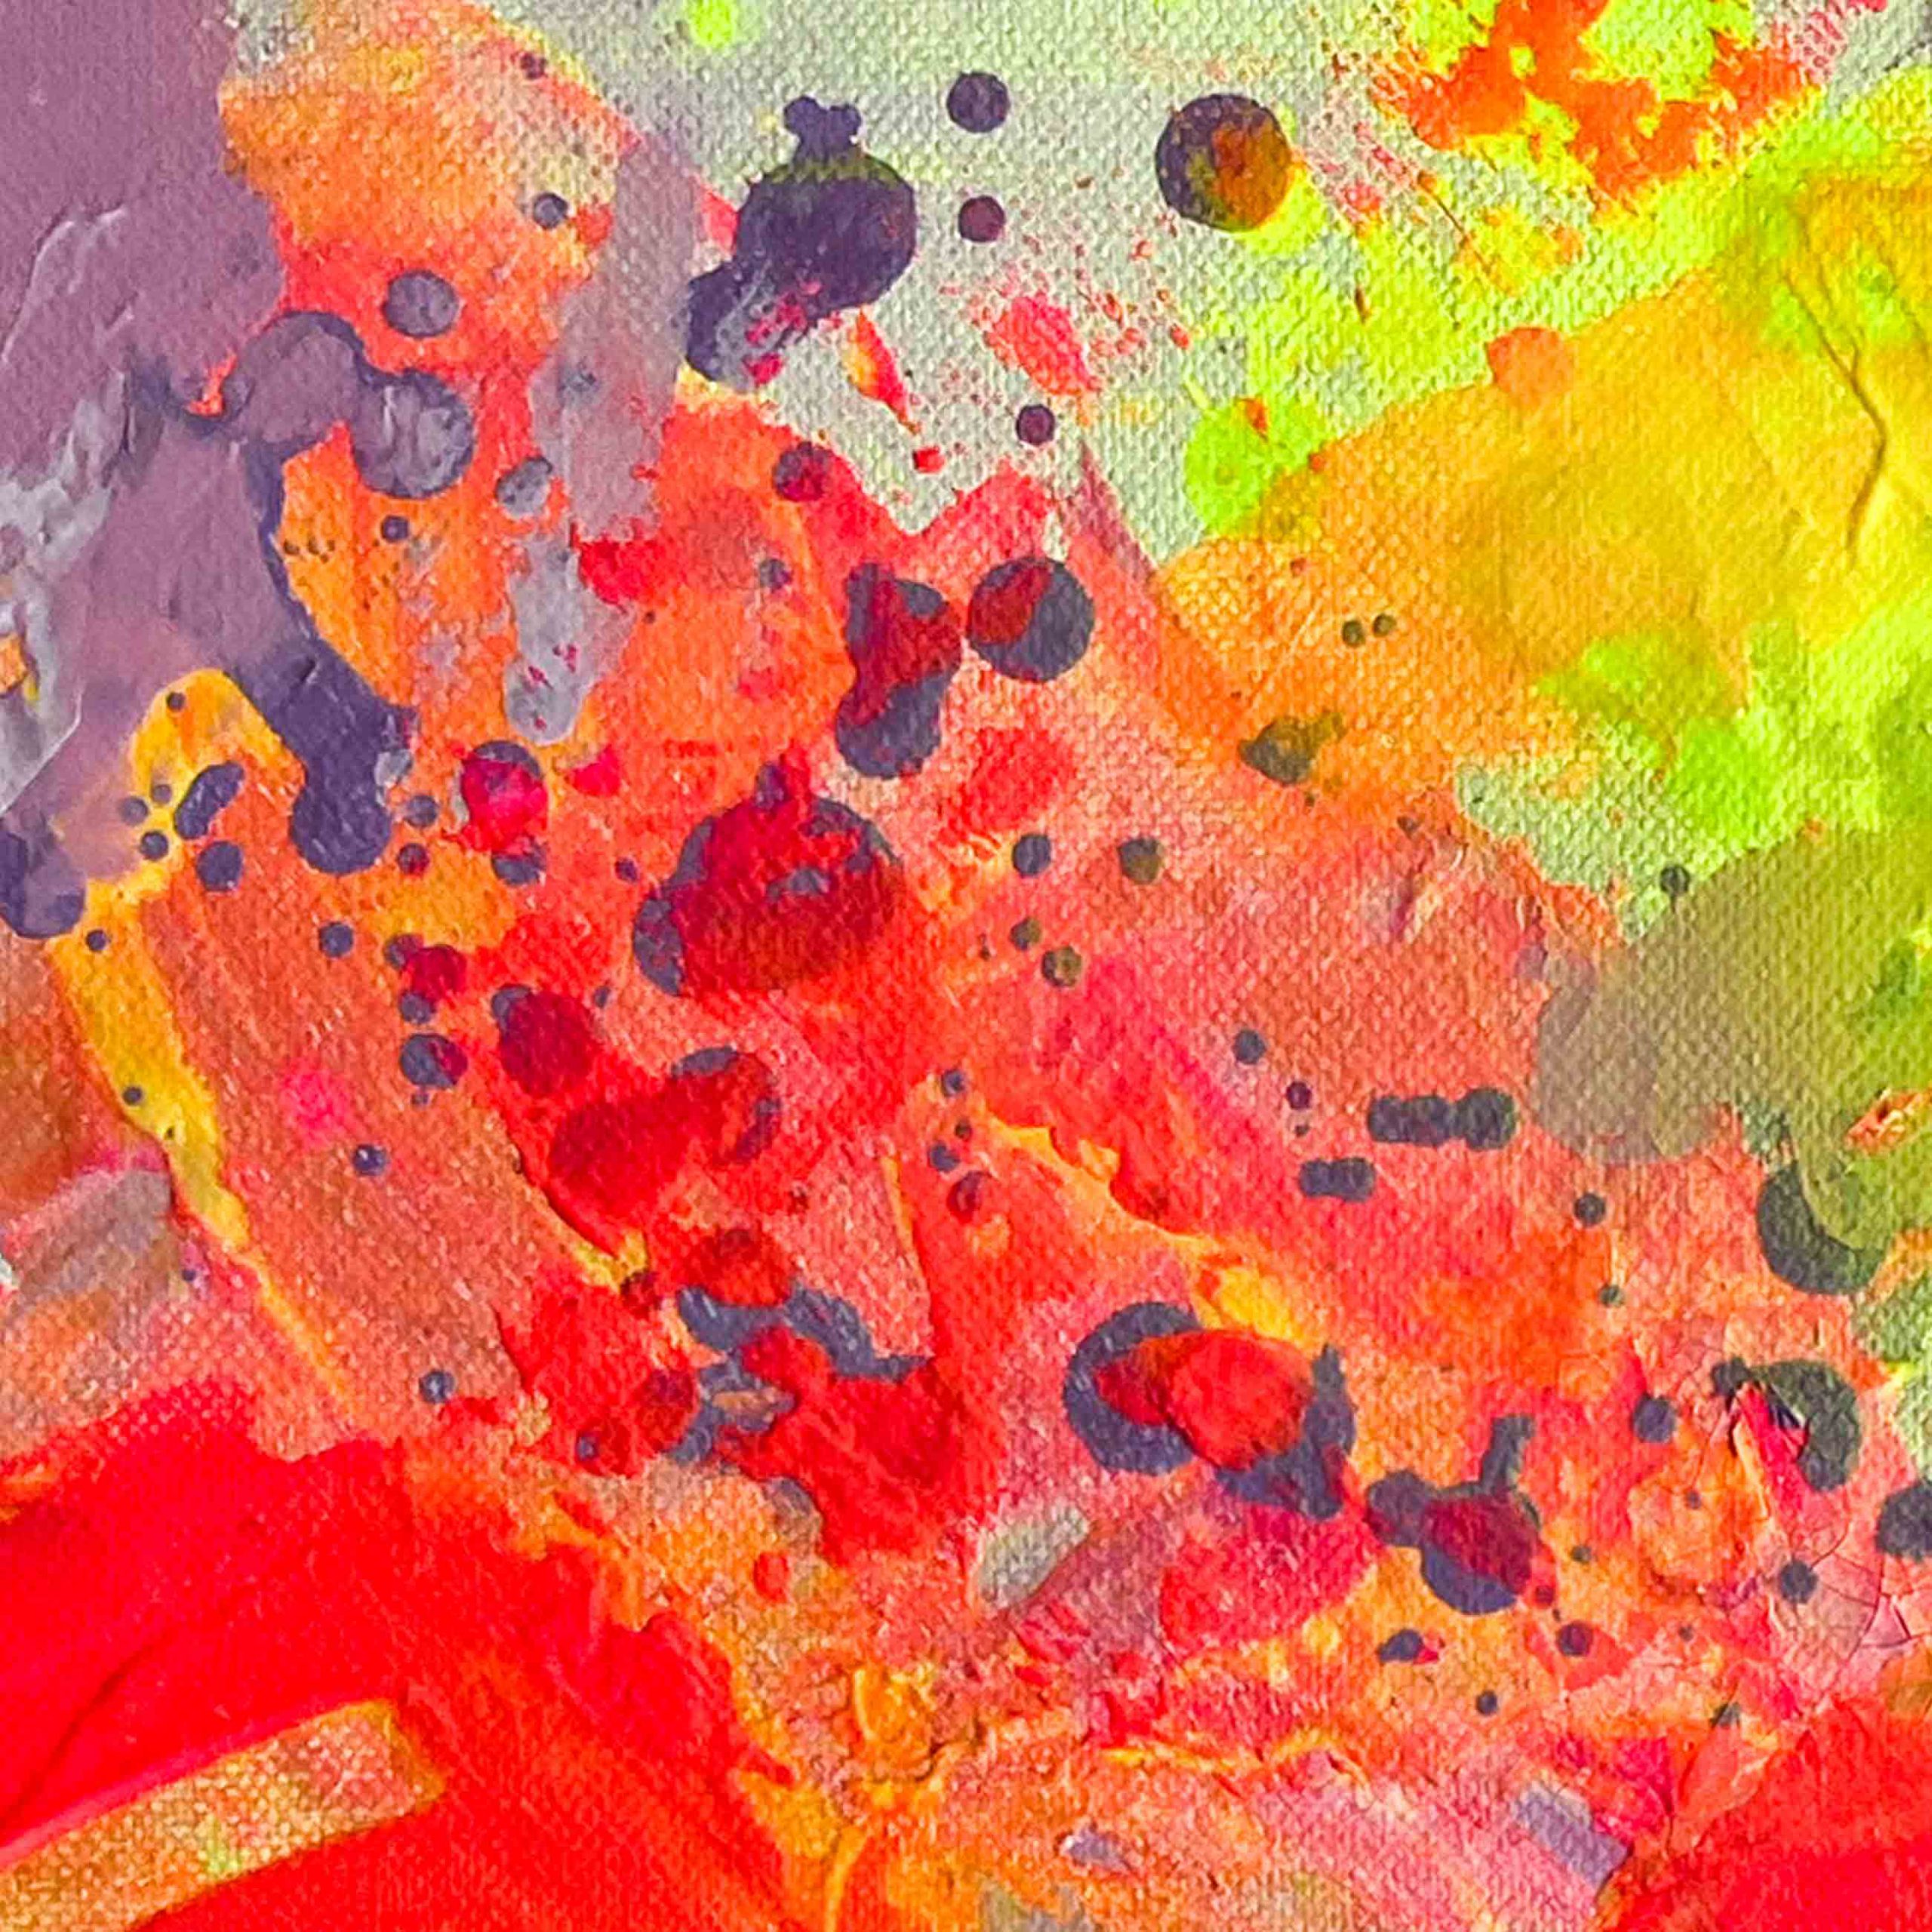 Detailansicht: Abstraktes Leinwandbild ON THE DANCEFLOOR von Sophie Friederichs. Farbwelt: Neongelb, Neonpink, Lila und Orange